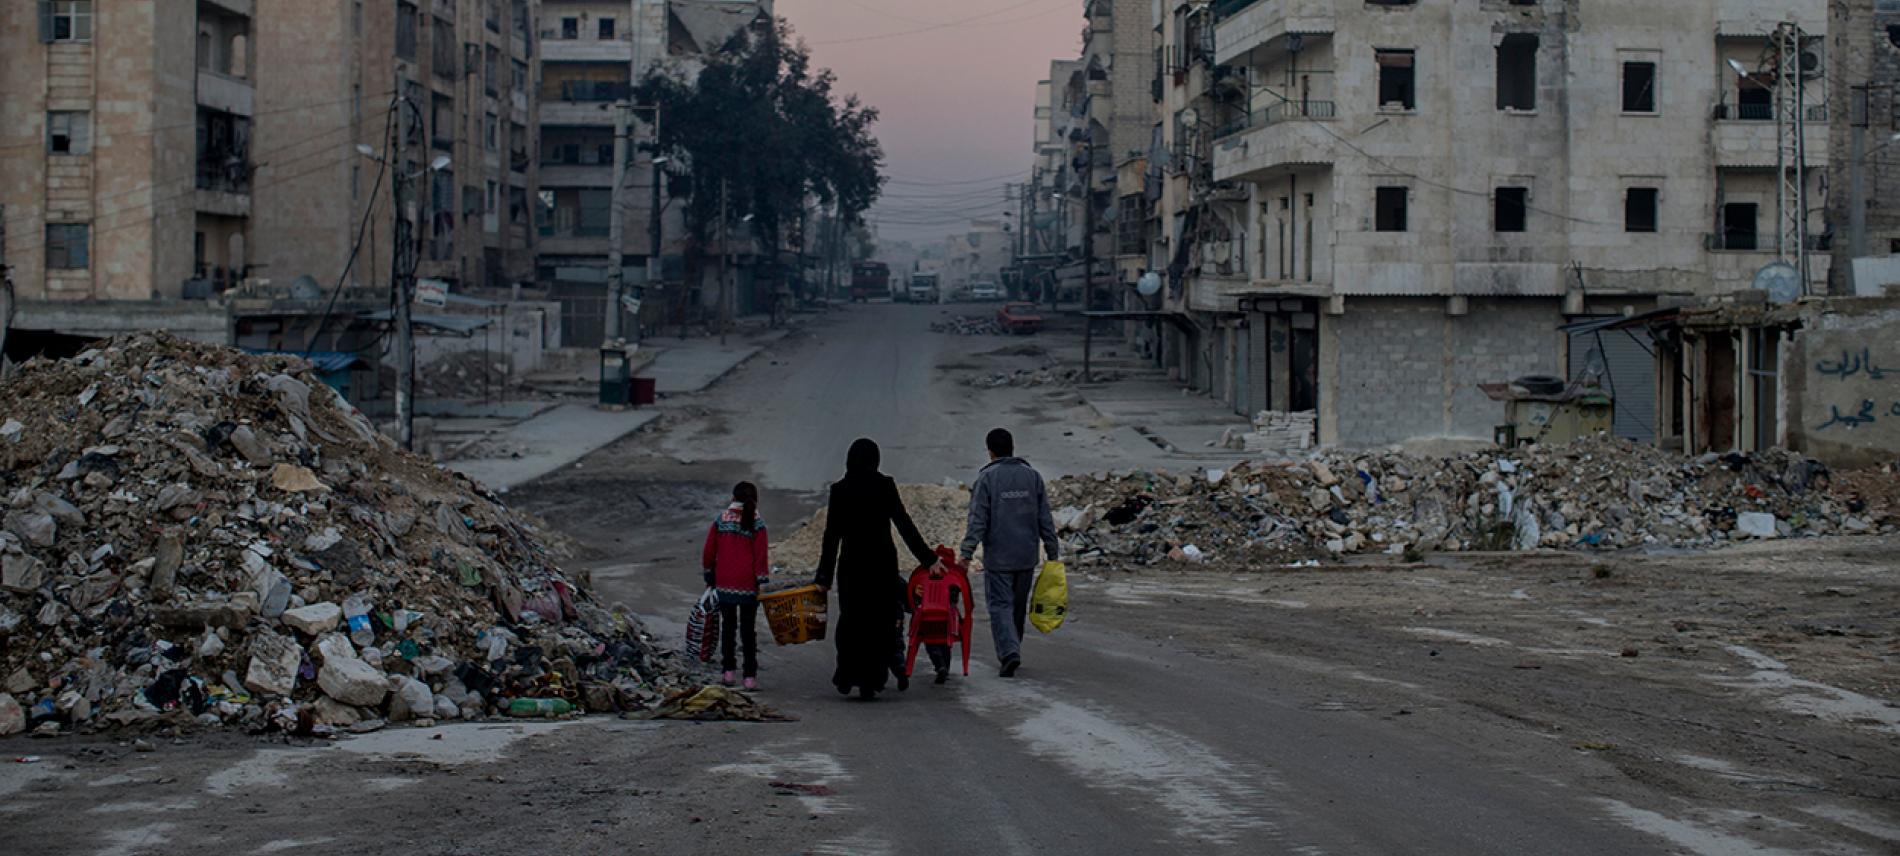 Die zerstörte Stadt Aleppo. Foto: Niclas Hammarström